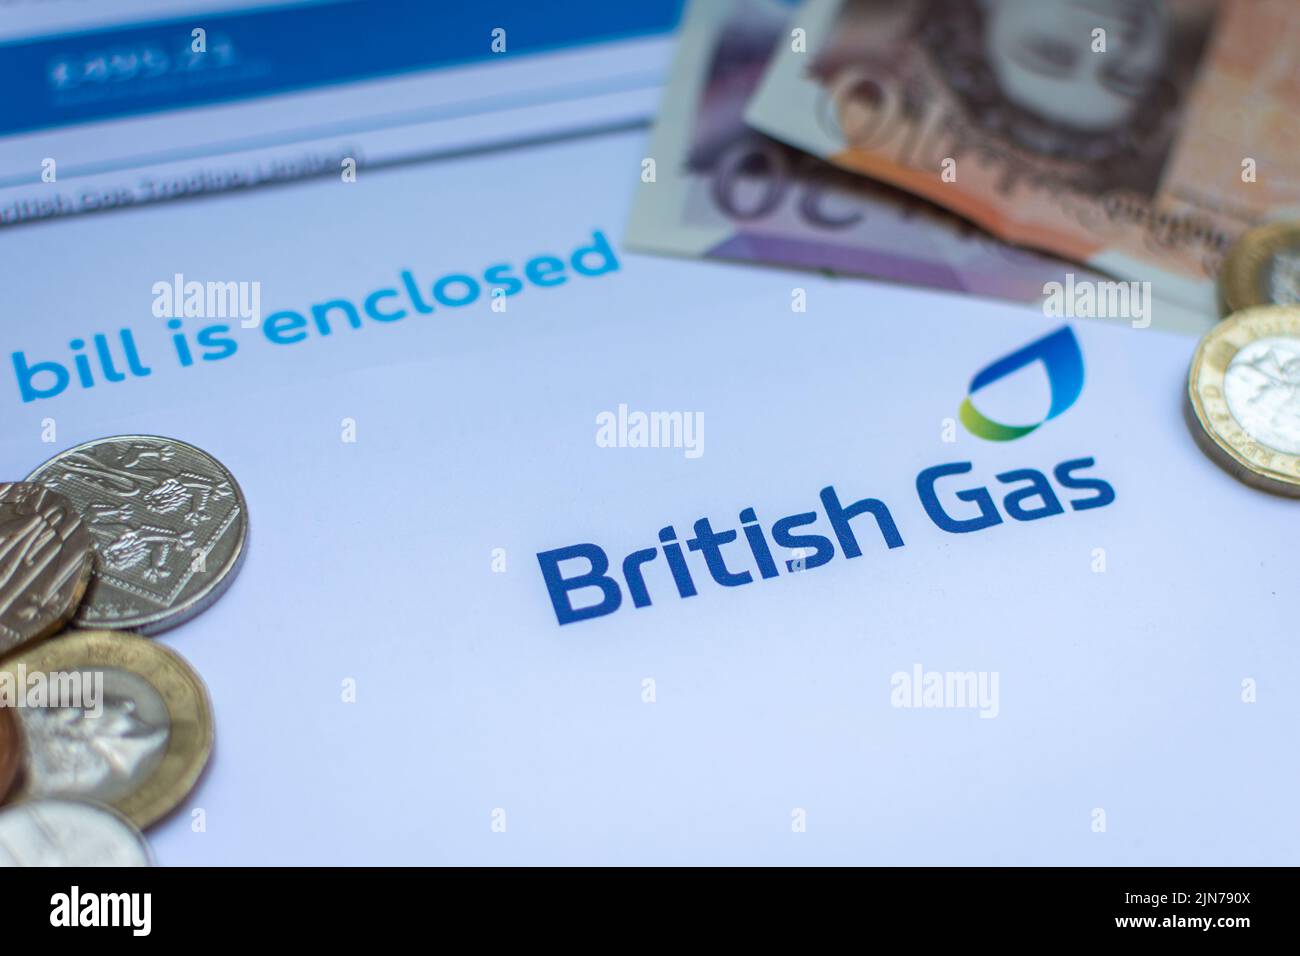 Una fattura britannica del gas con la valuta del Regno Unito. Il costo della vita e l'inflazione con prezzi in aumento stanno colpendo molte persone. Foto Stock